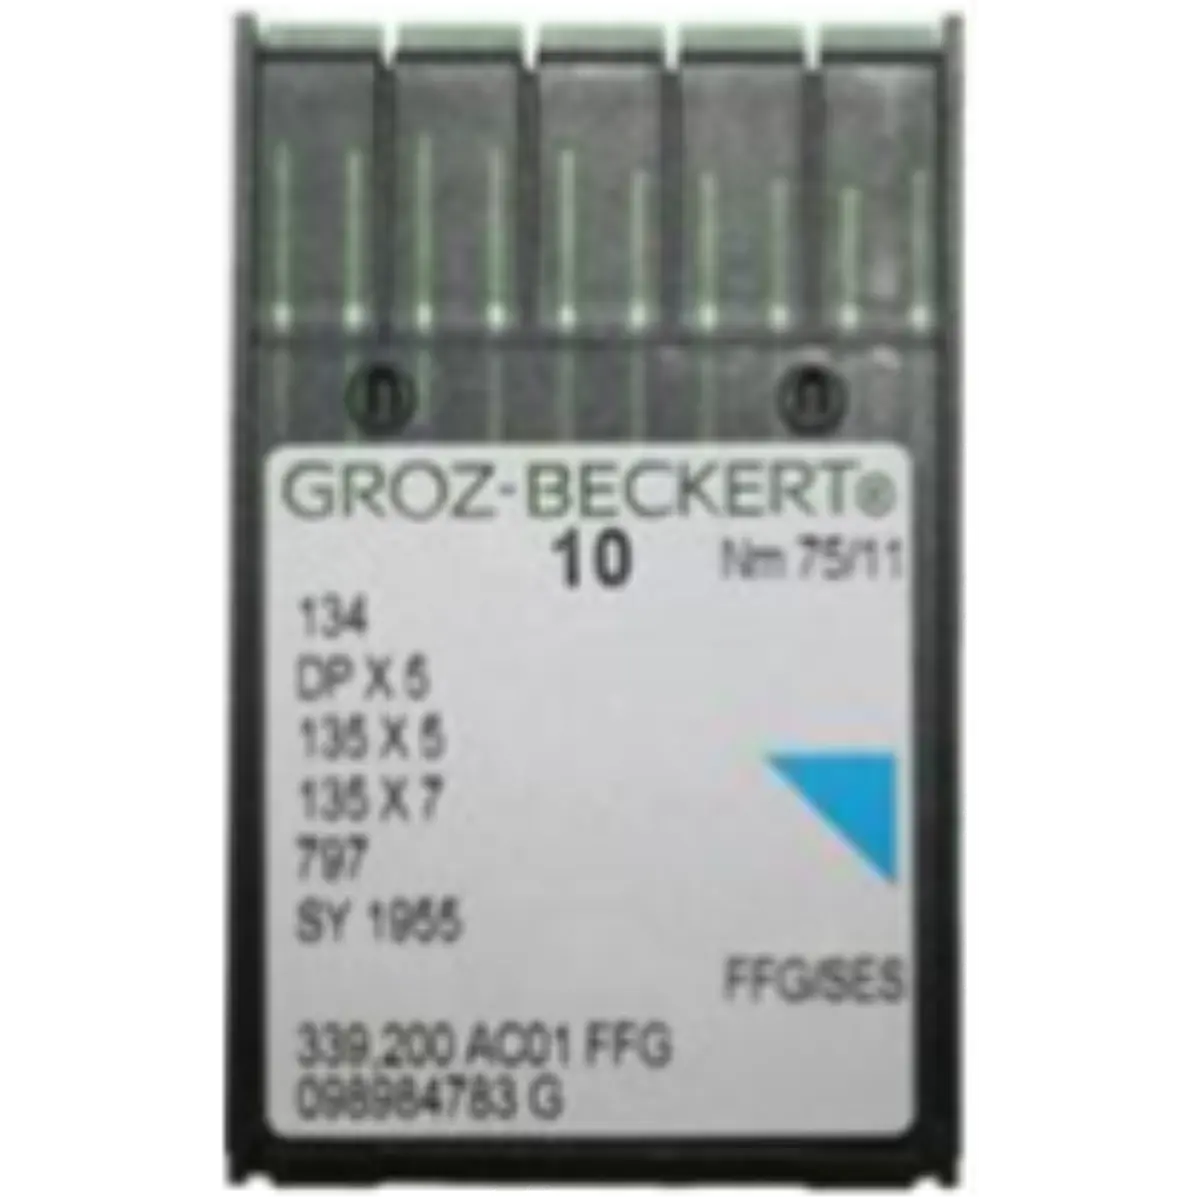 Industrial Lockstitch Needles 134R, 135x7, 135x25, DPx5 Groz-Beckert